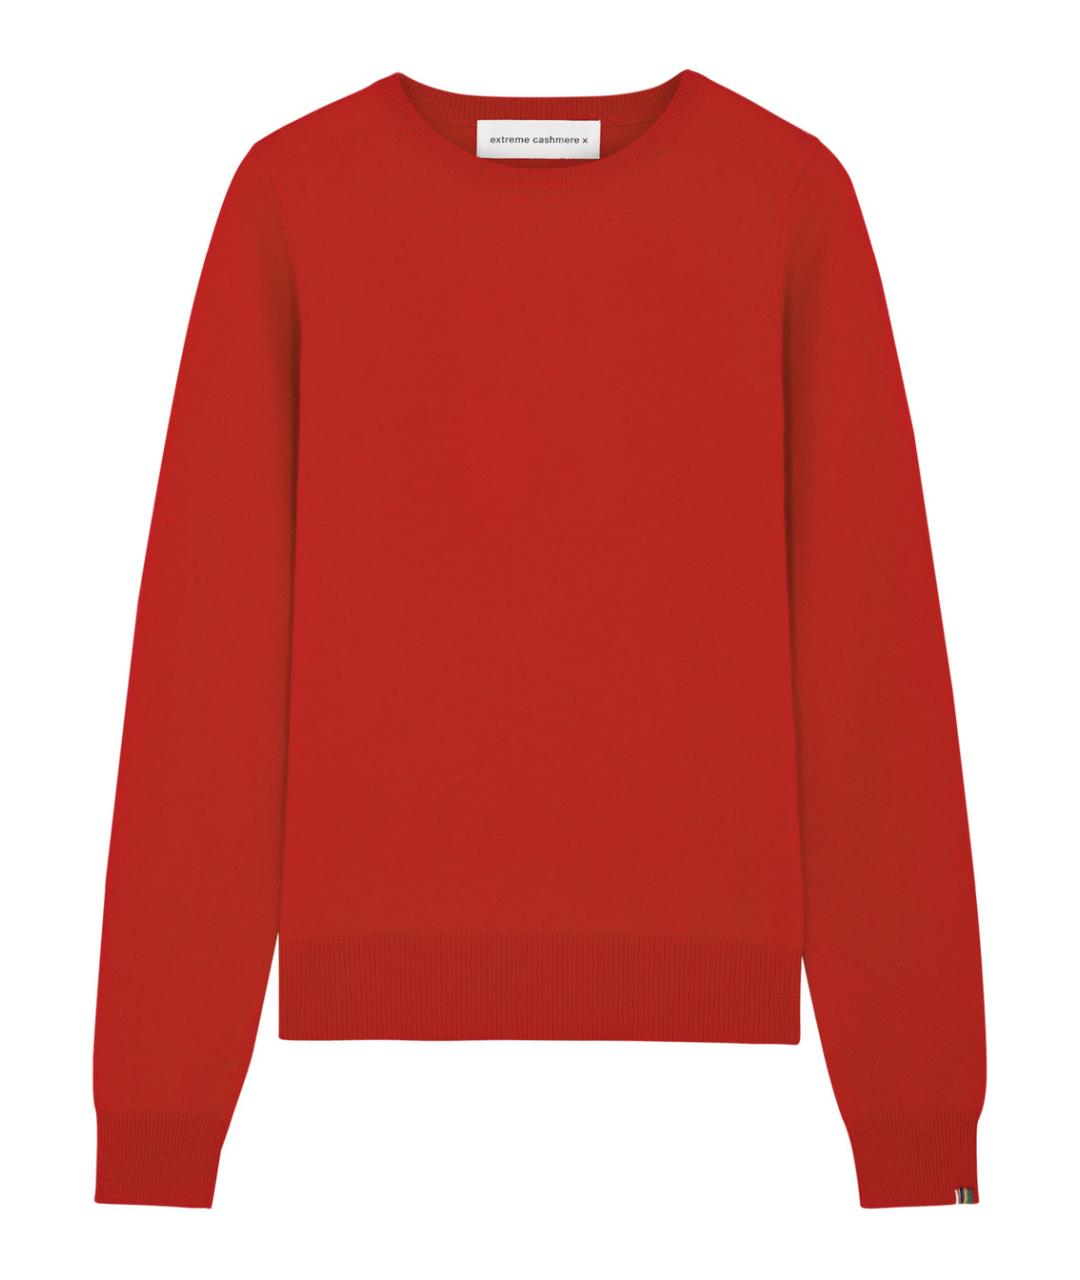 EXTREME CASHMERE Красный кашемировый джемпер / свитер, фото 1